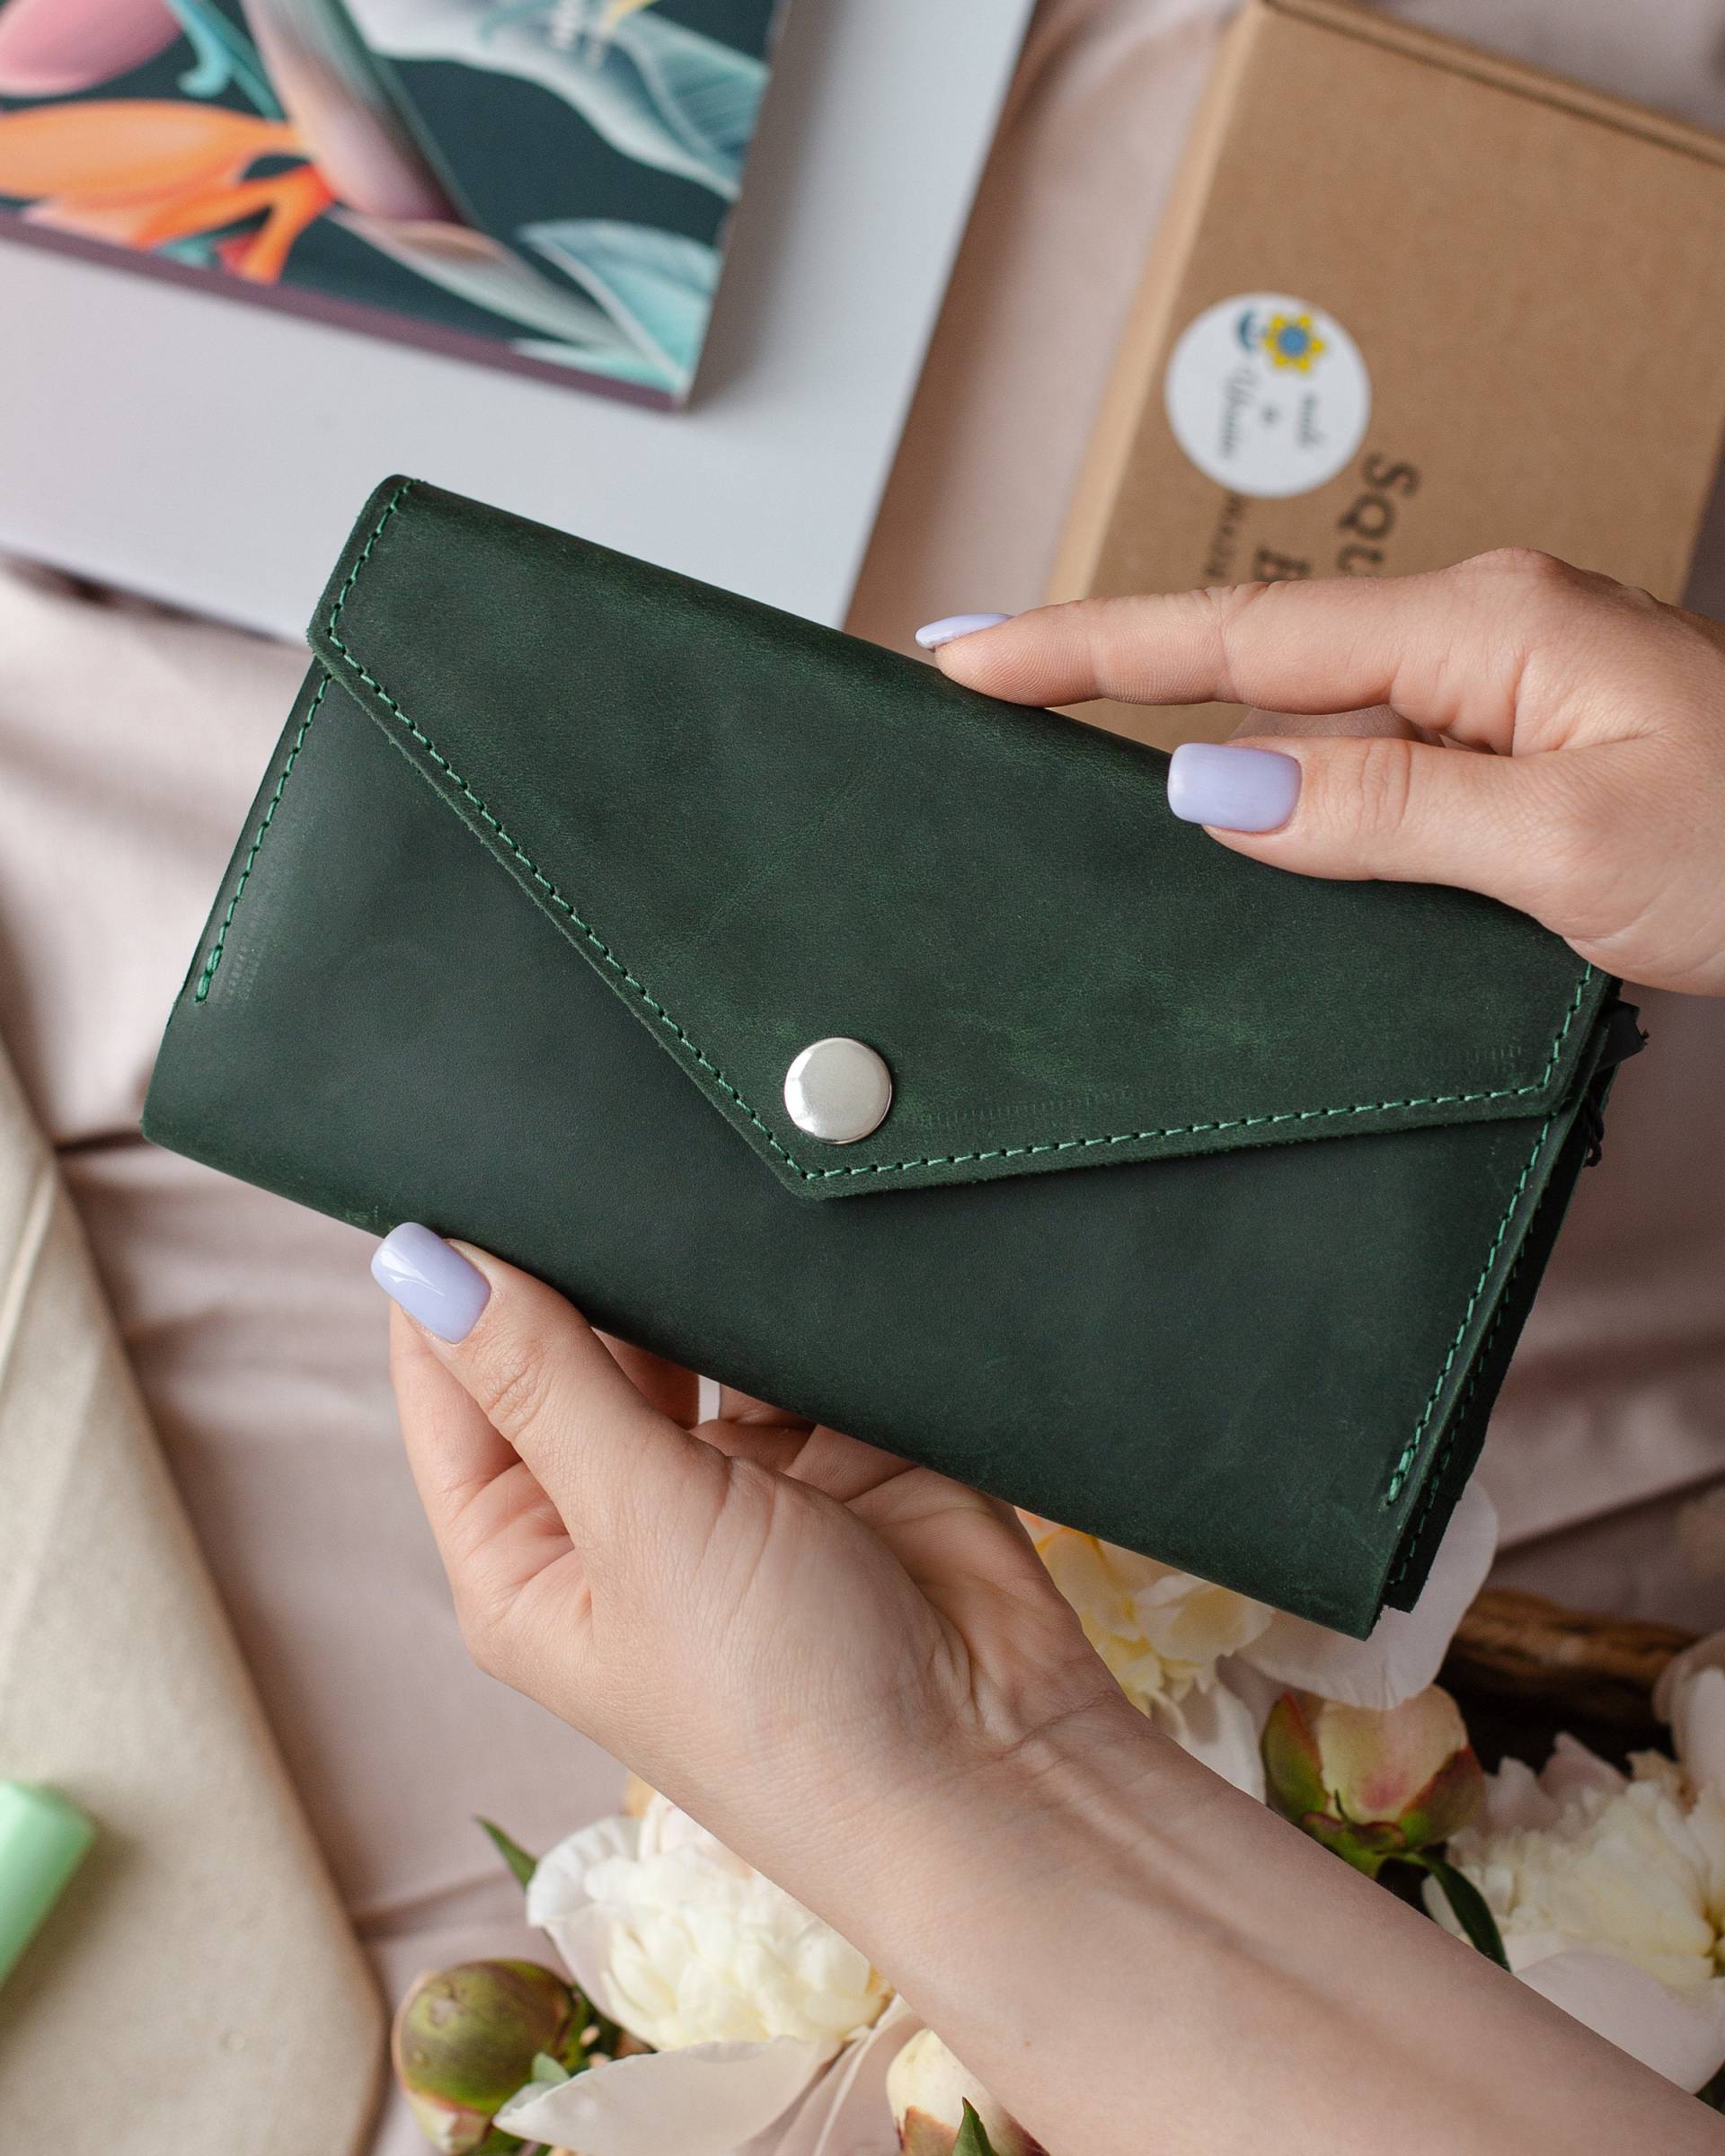 Grünes Leder Portemonnaie, Handgemachtes Taschenbuch, Grünes Smaragdgrüne Damen Geldbörse, Kreditkartenetui Geldbörse Button Wallet von SquirrelsBags